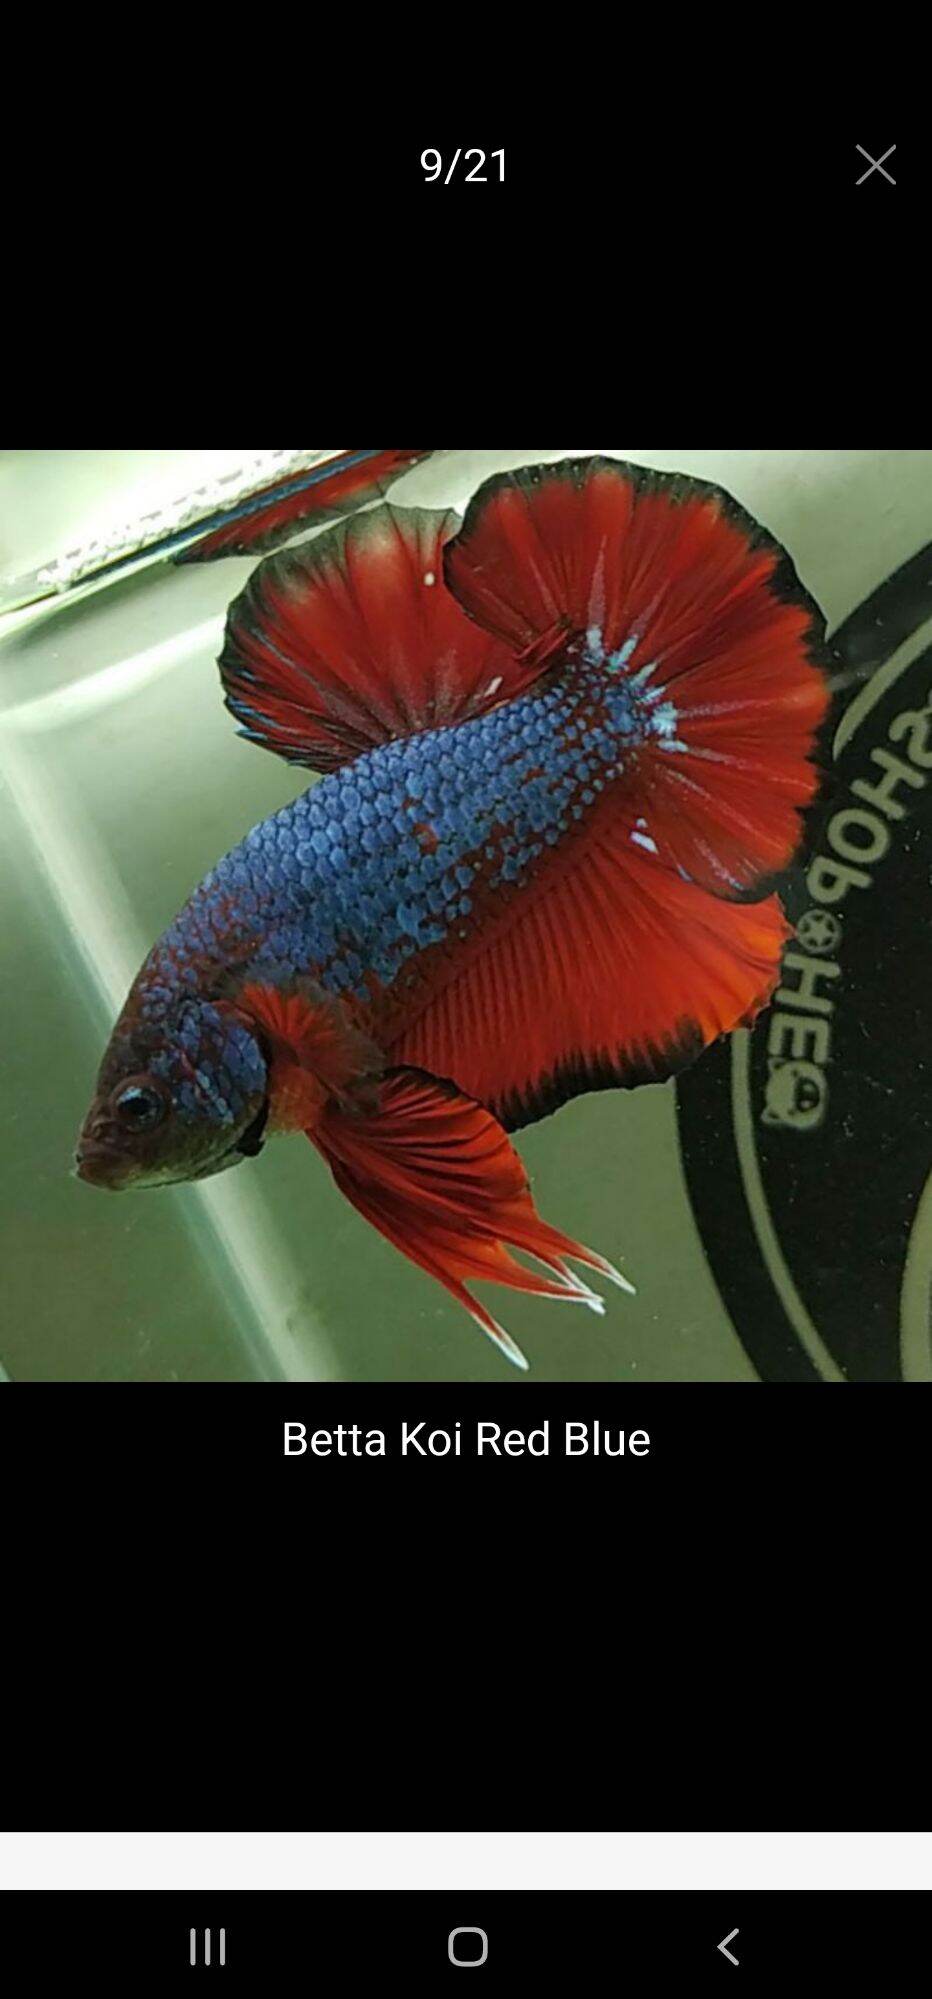 Cá Betta Koi Red Blue